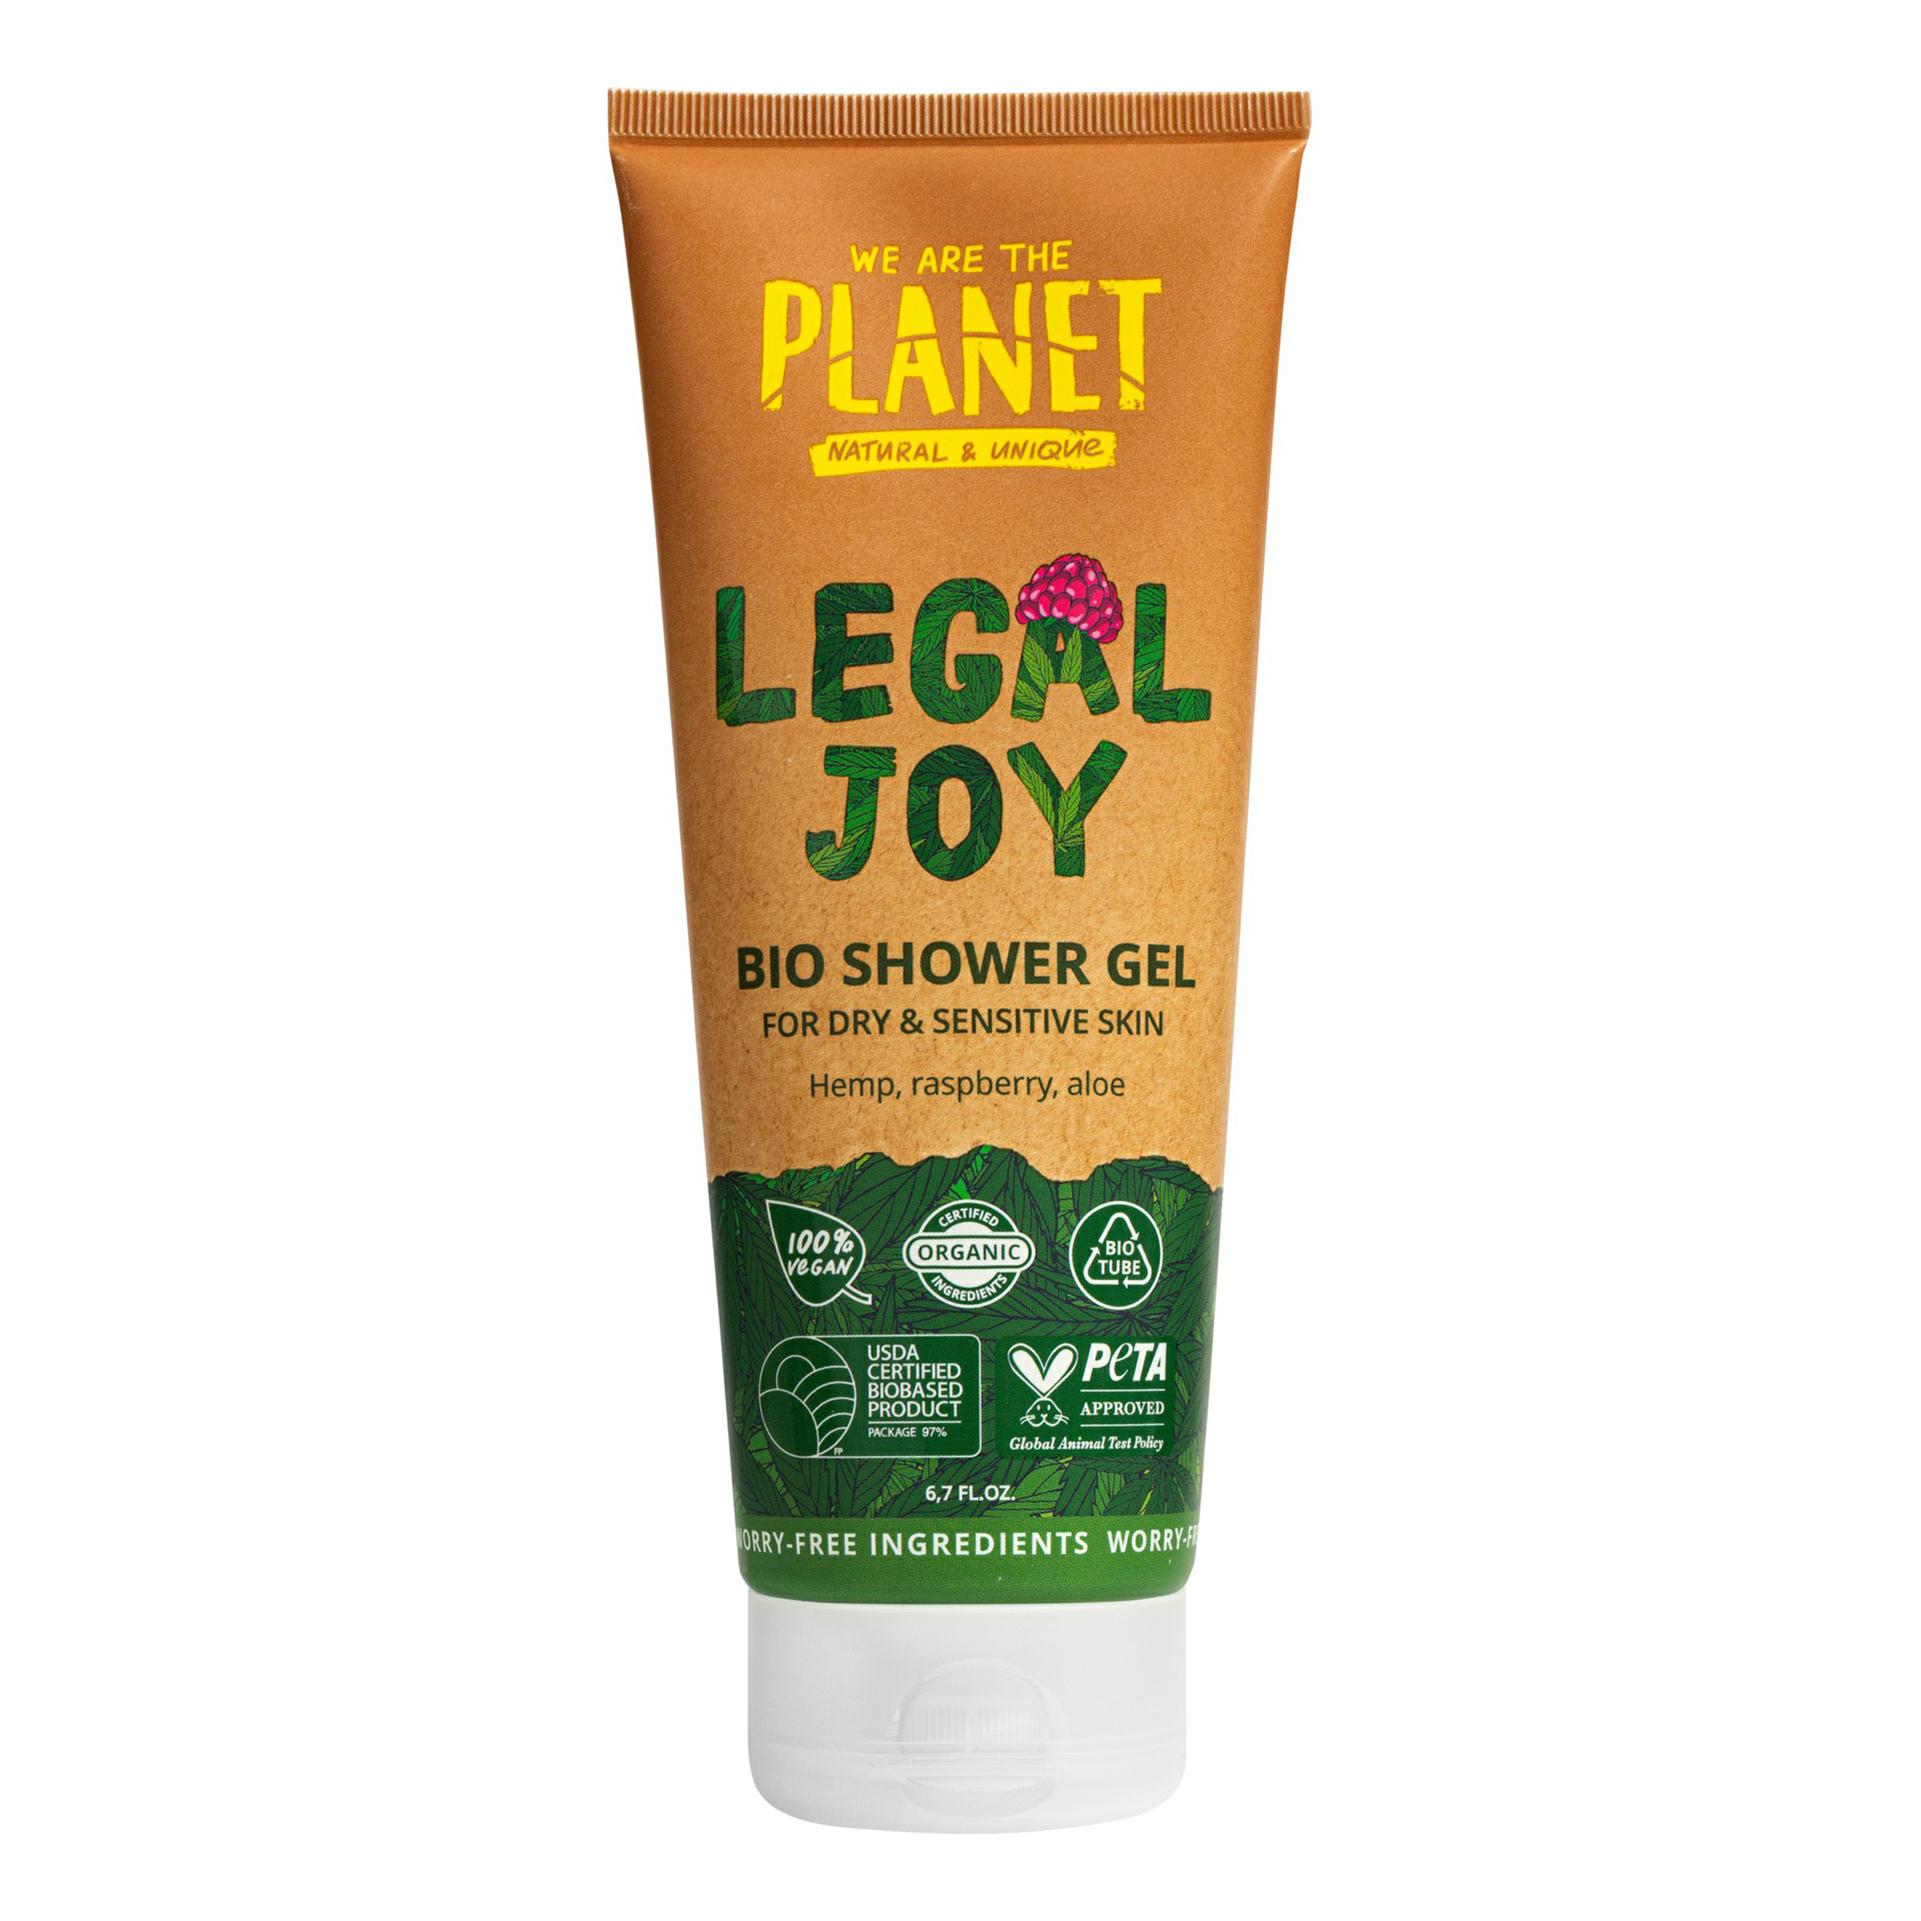 Купить Гель для душа We are the planet Legal Joy для сухой и чувствительной кожи 200 мл